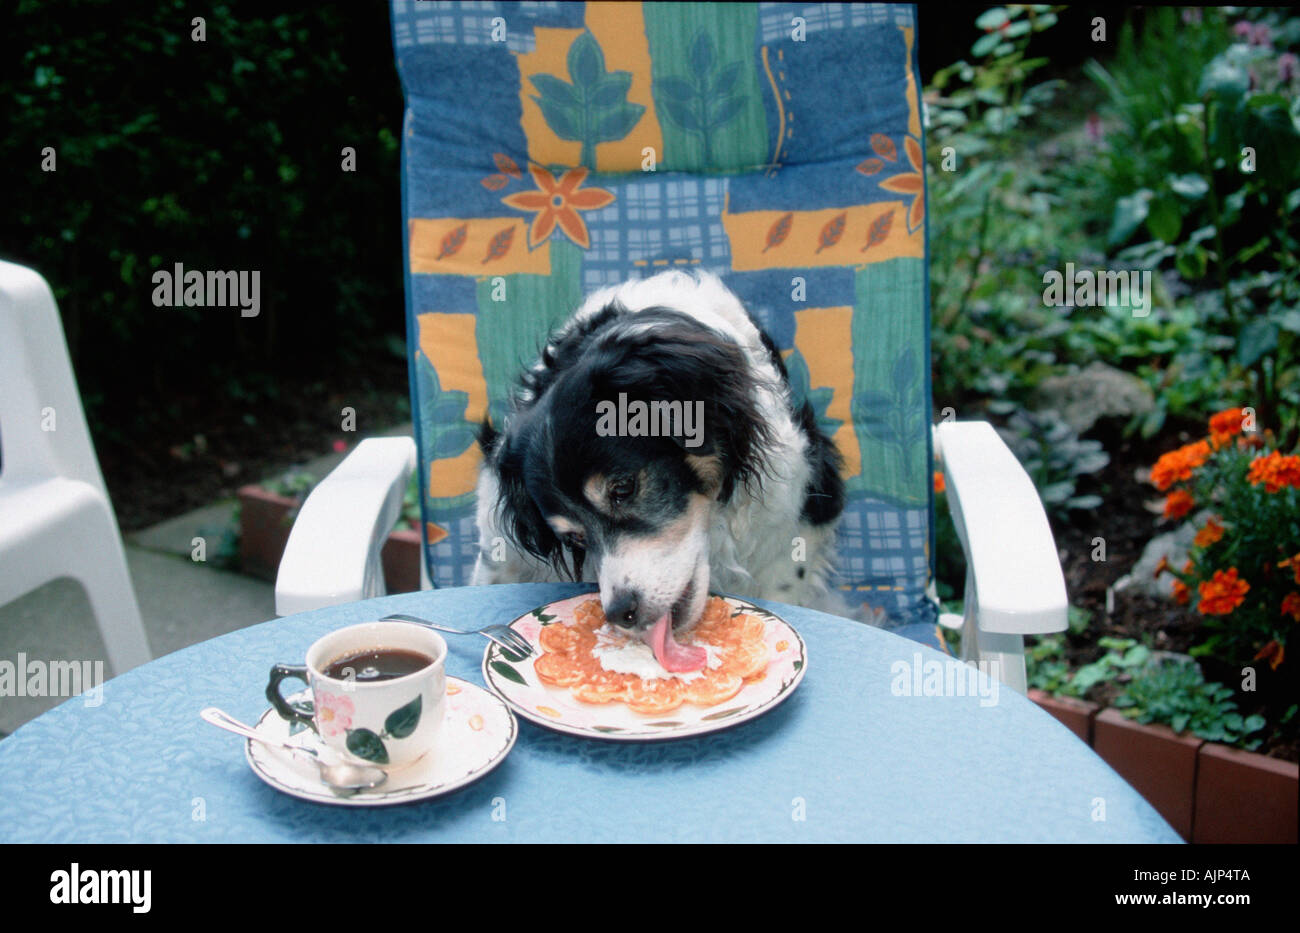 Gemischte Rasse Hund leckt Sahne von Waffel auf Platte Stockfoto